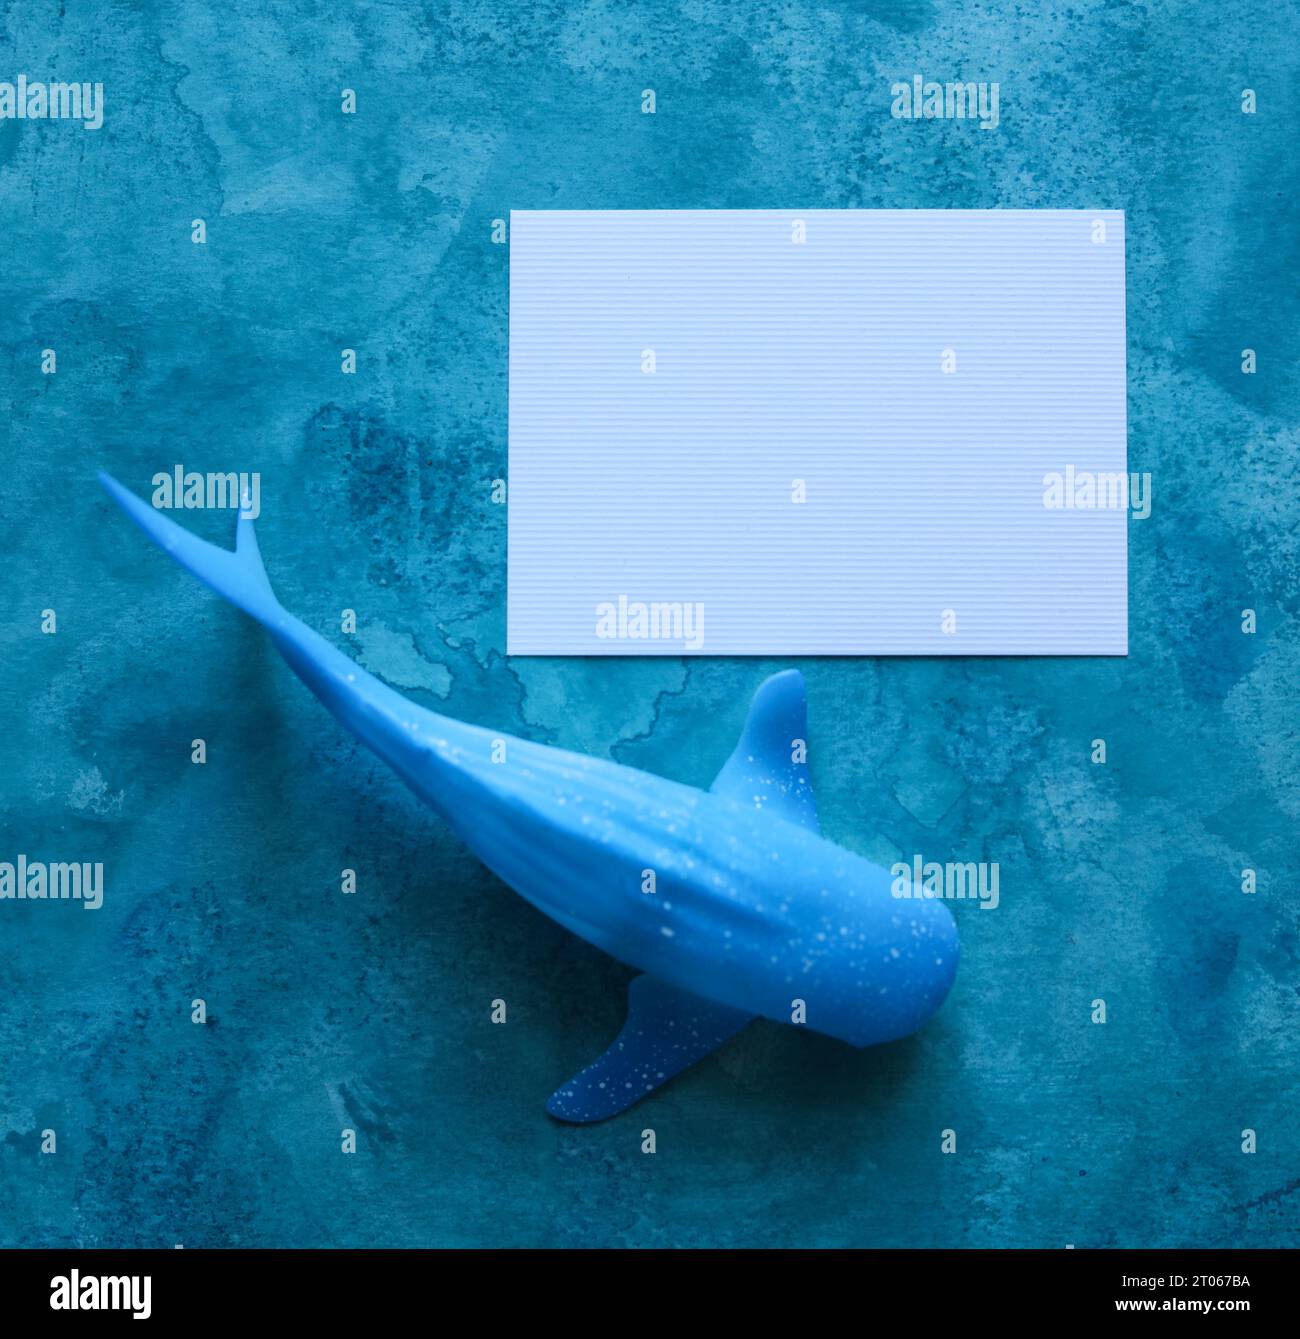 baleine jouet avec une carte de papier vierge avec un fond aquarelle bleu Banque D'Images